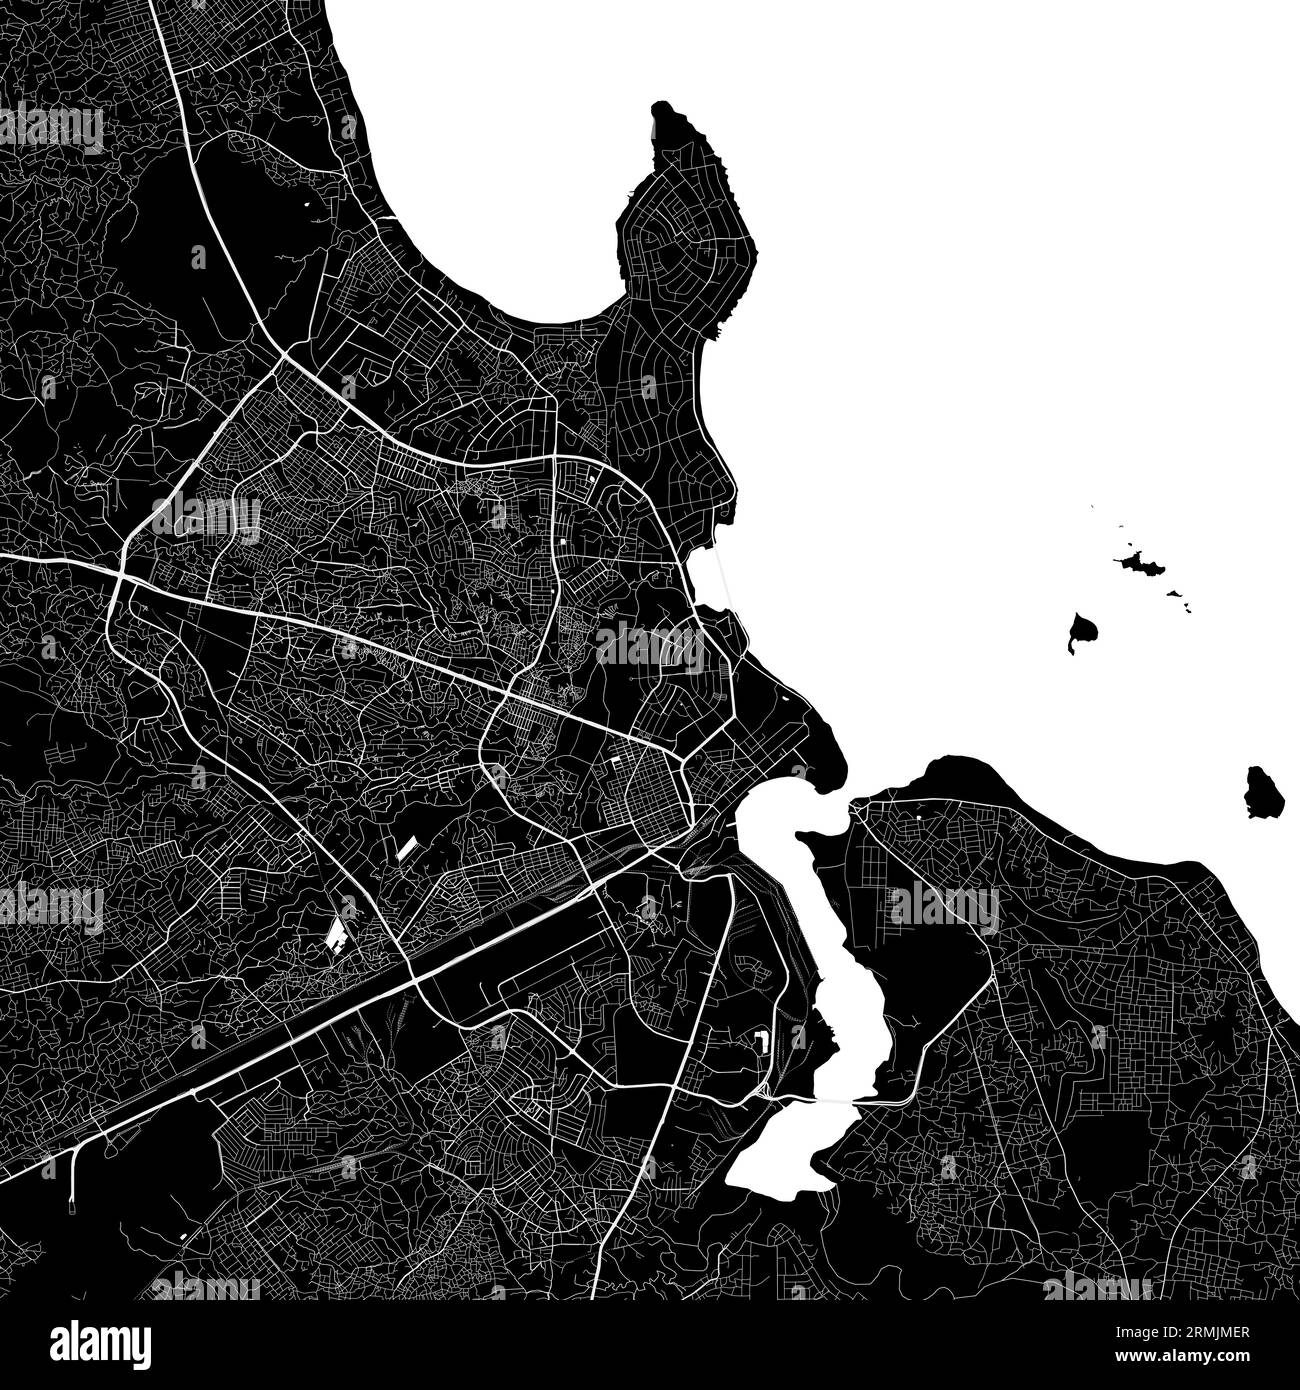 Carte de Dar es Salaam ville, Tanzanie. Affiche urbaine en noir et blanc. Image de la carte routière avec vue de la zone urbaine. Illustration de Vecteur